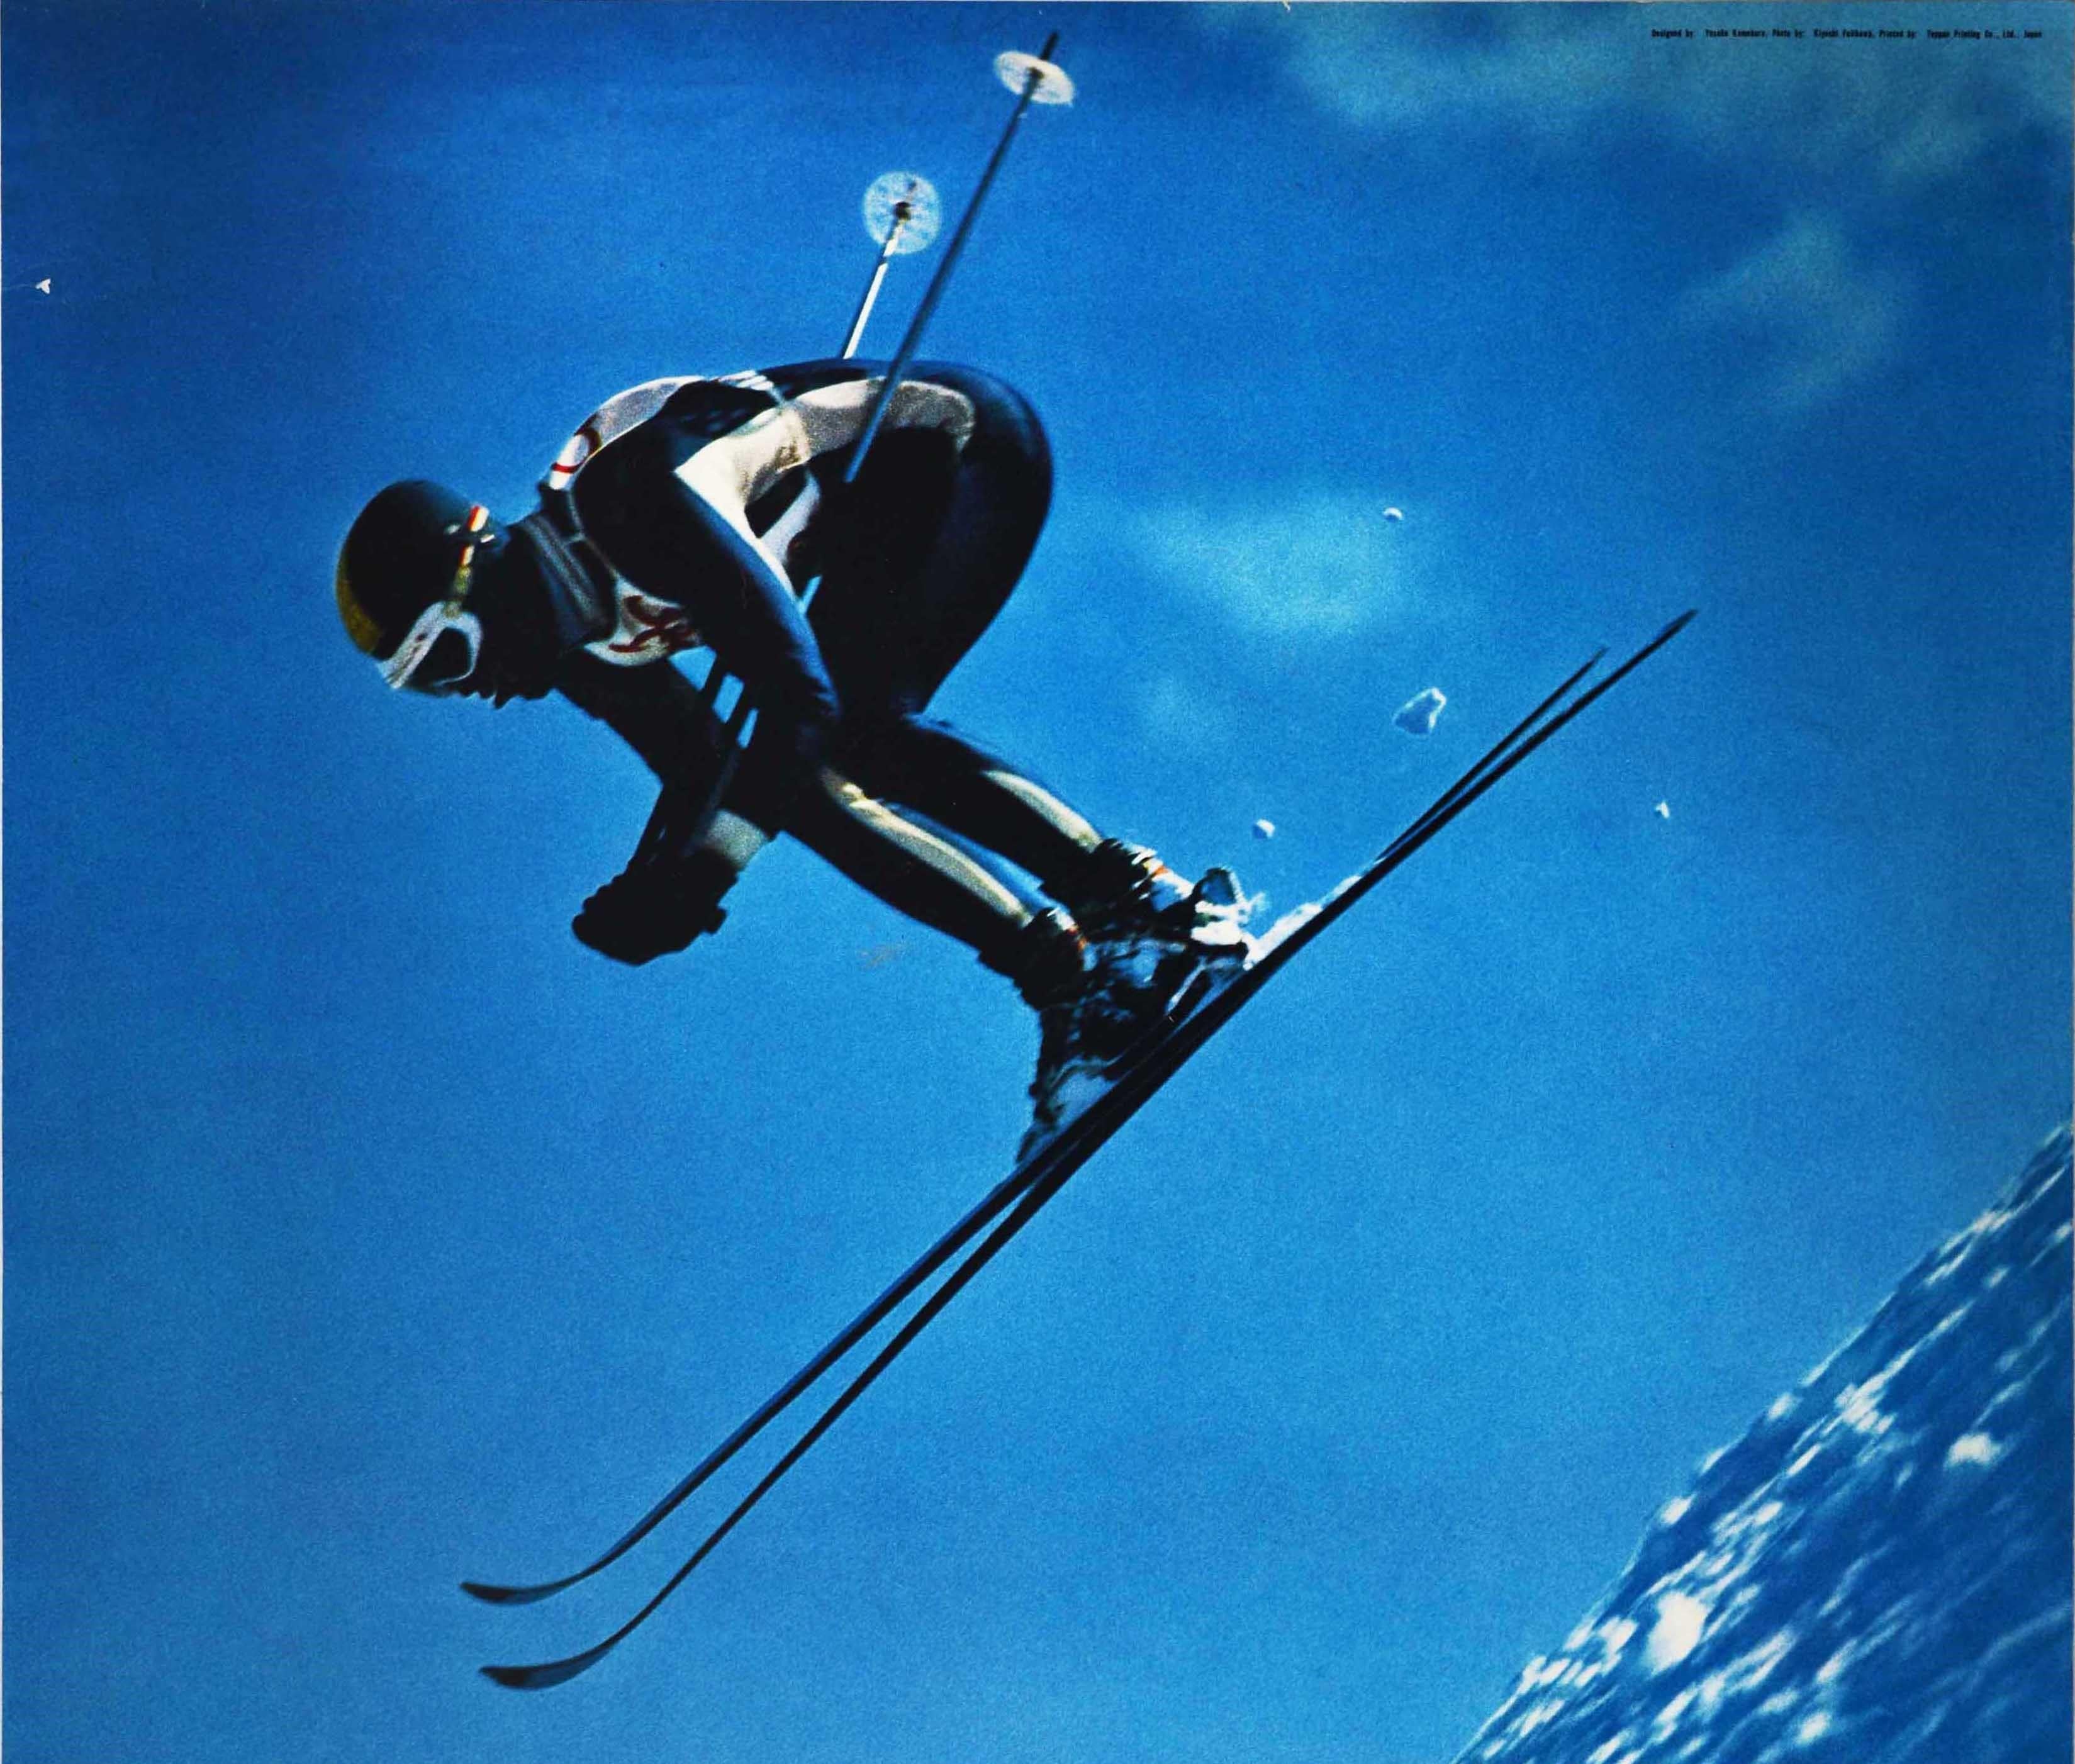 Original Vintage Poster Olympic Winter Games Sapporo Japan Hokkaido Skiing Event - Print by Yusaku Kamekura